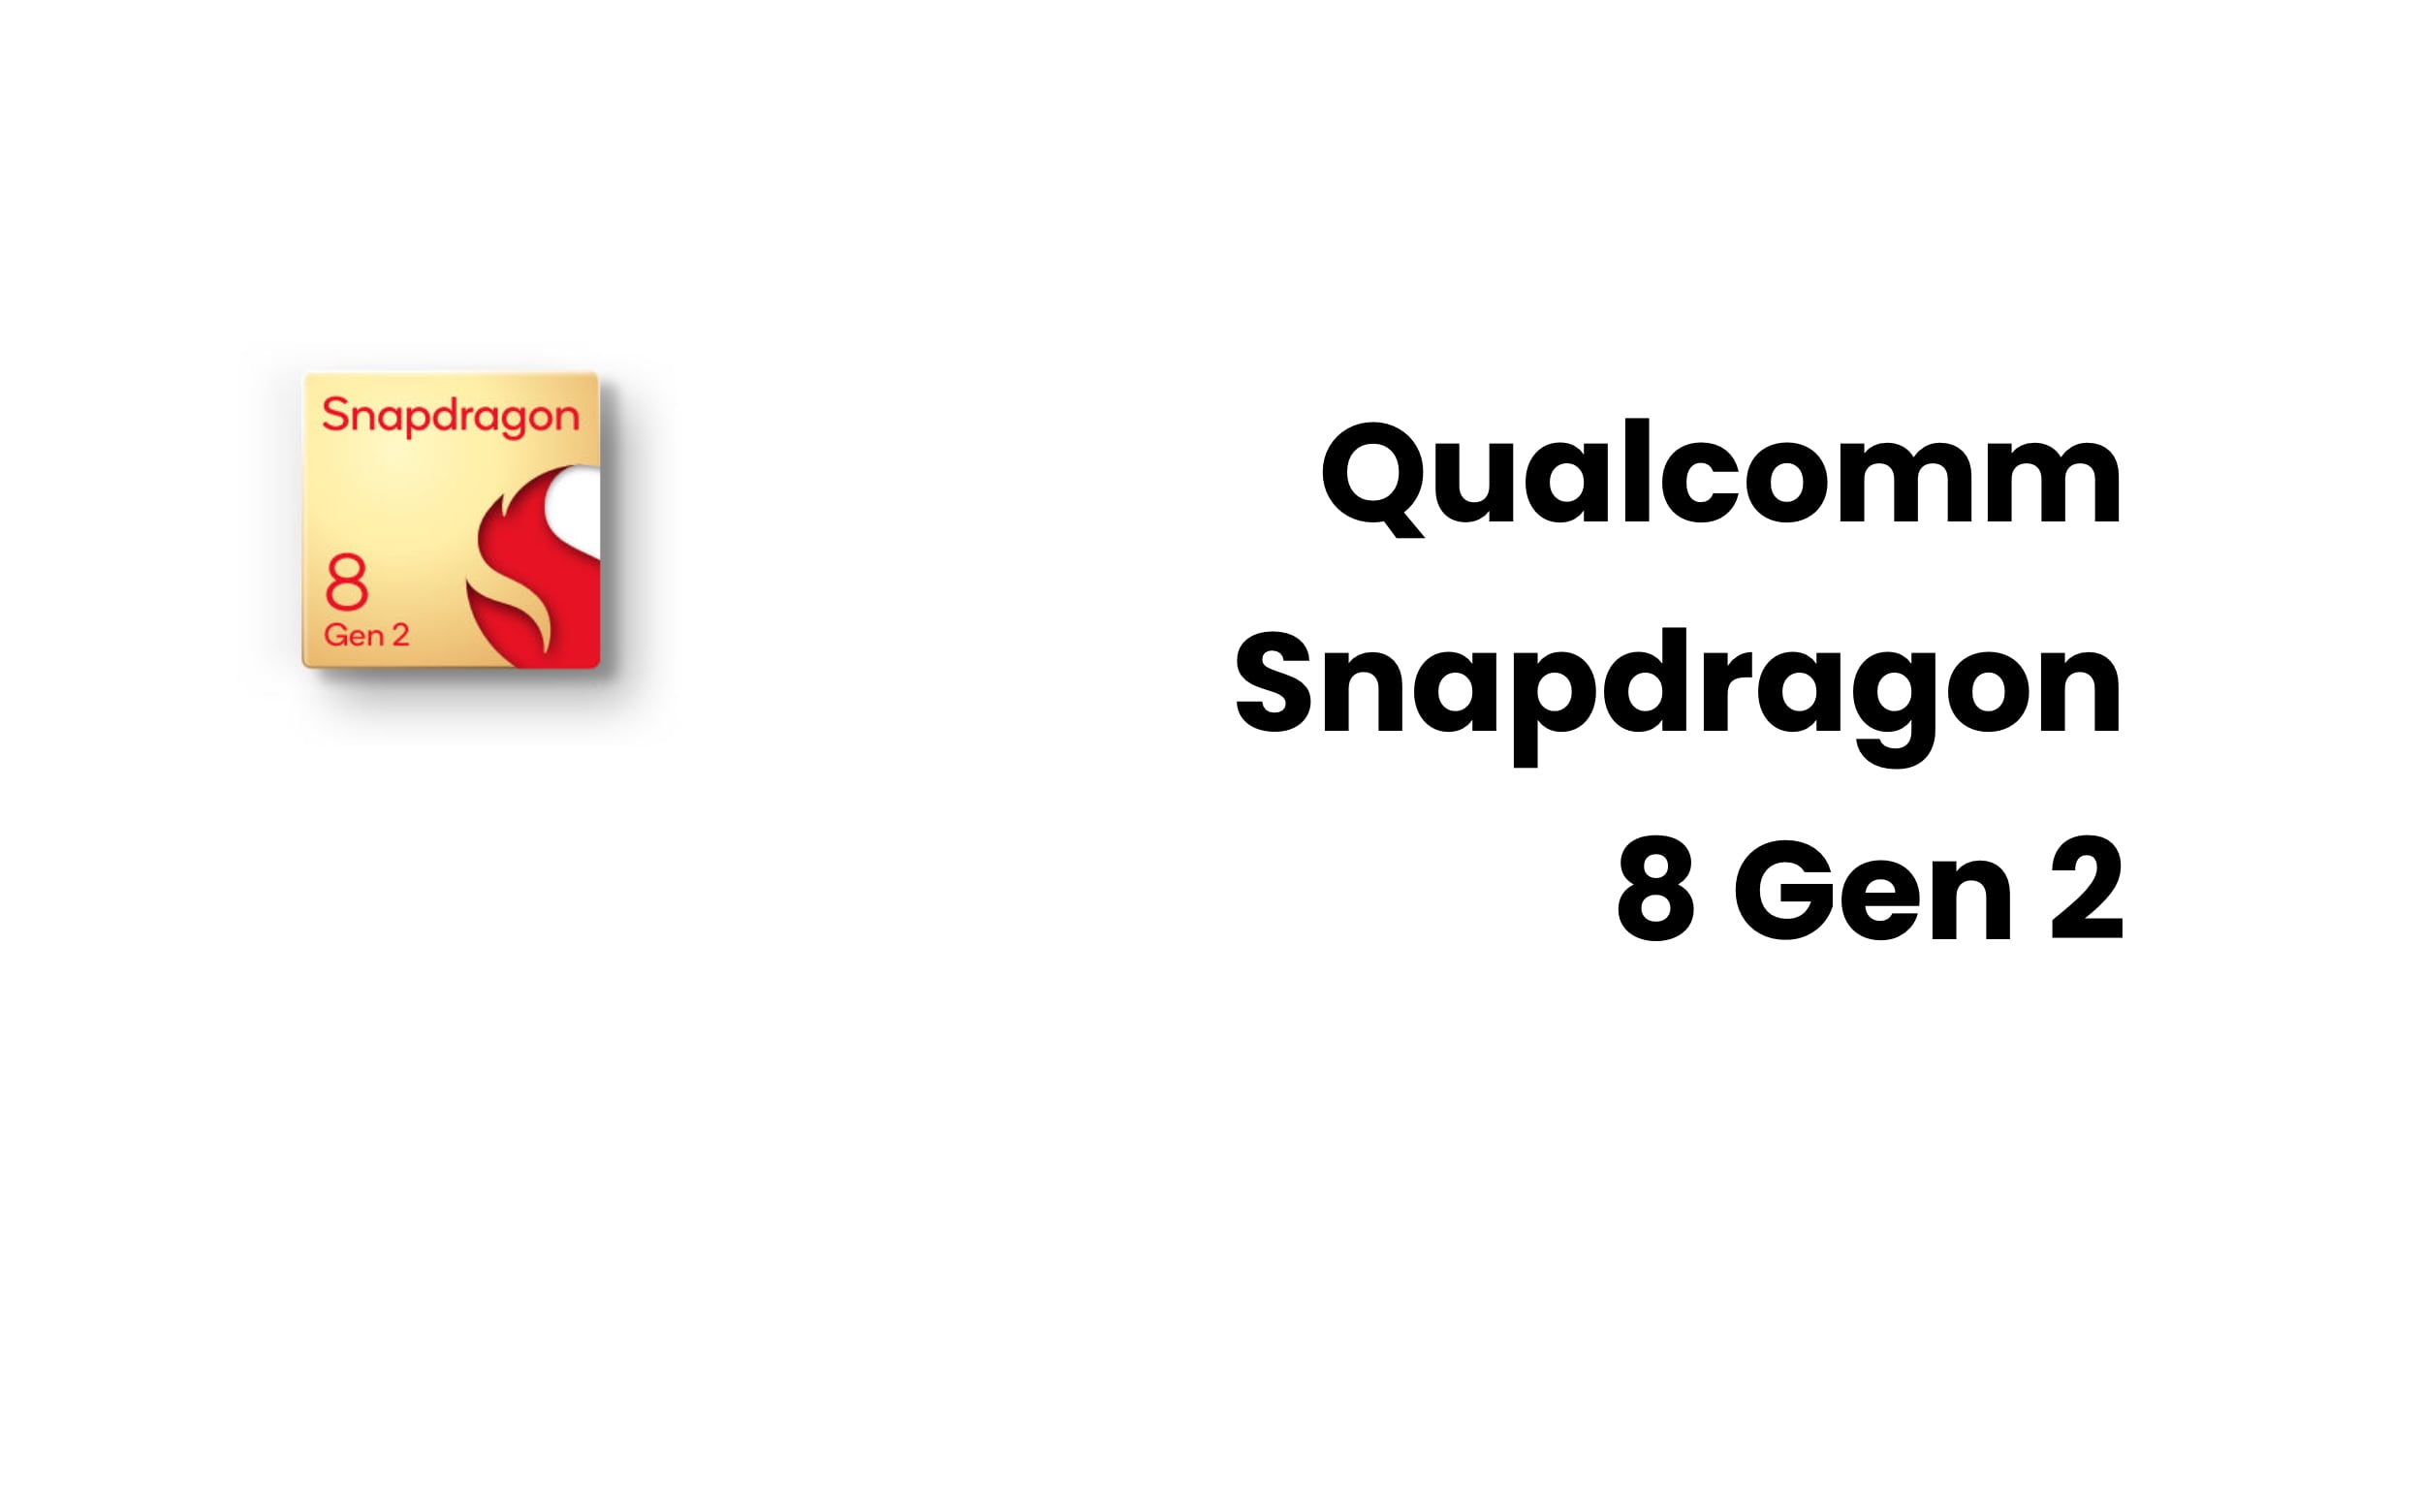 Qualcomm Snapdragon 8 Gen 2 smartphones